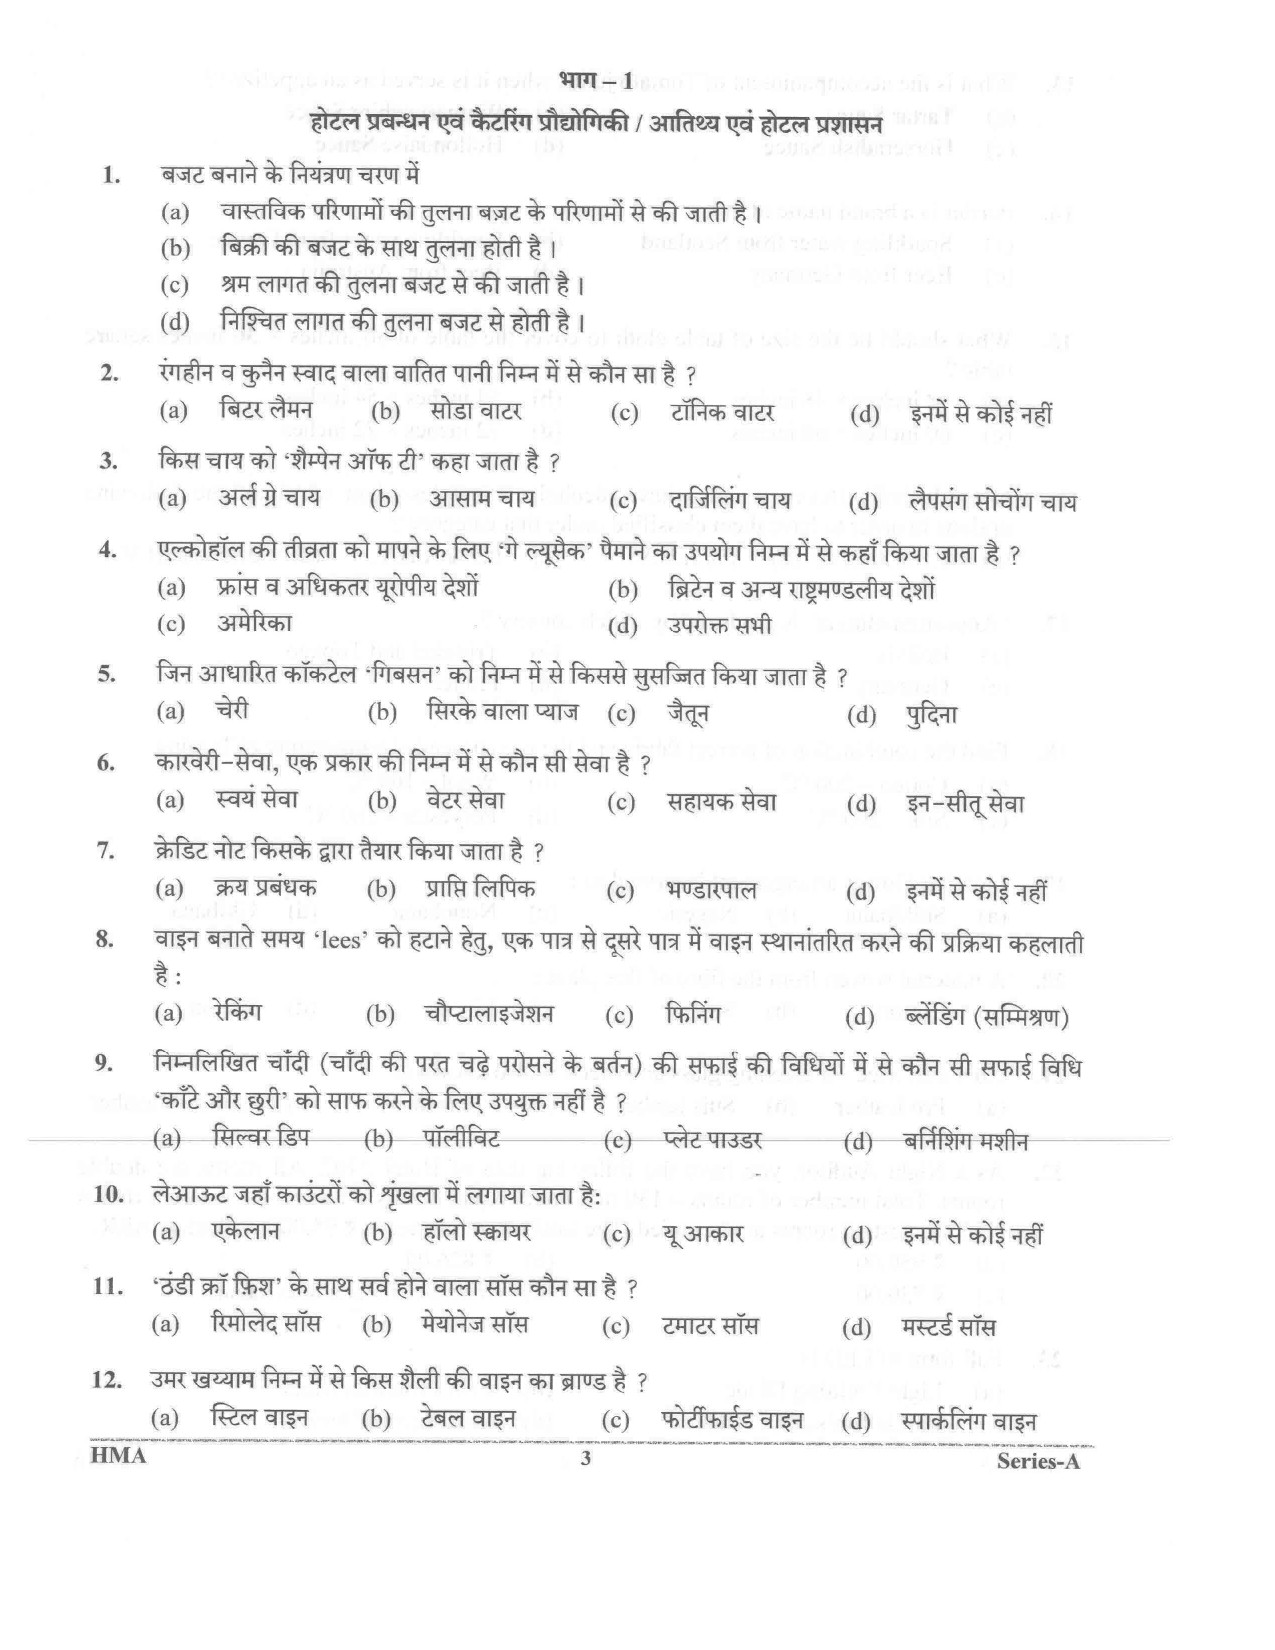 UKPSC Vyawasthapak Examination Question Paper 2021 2